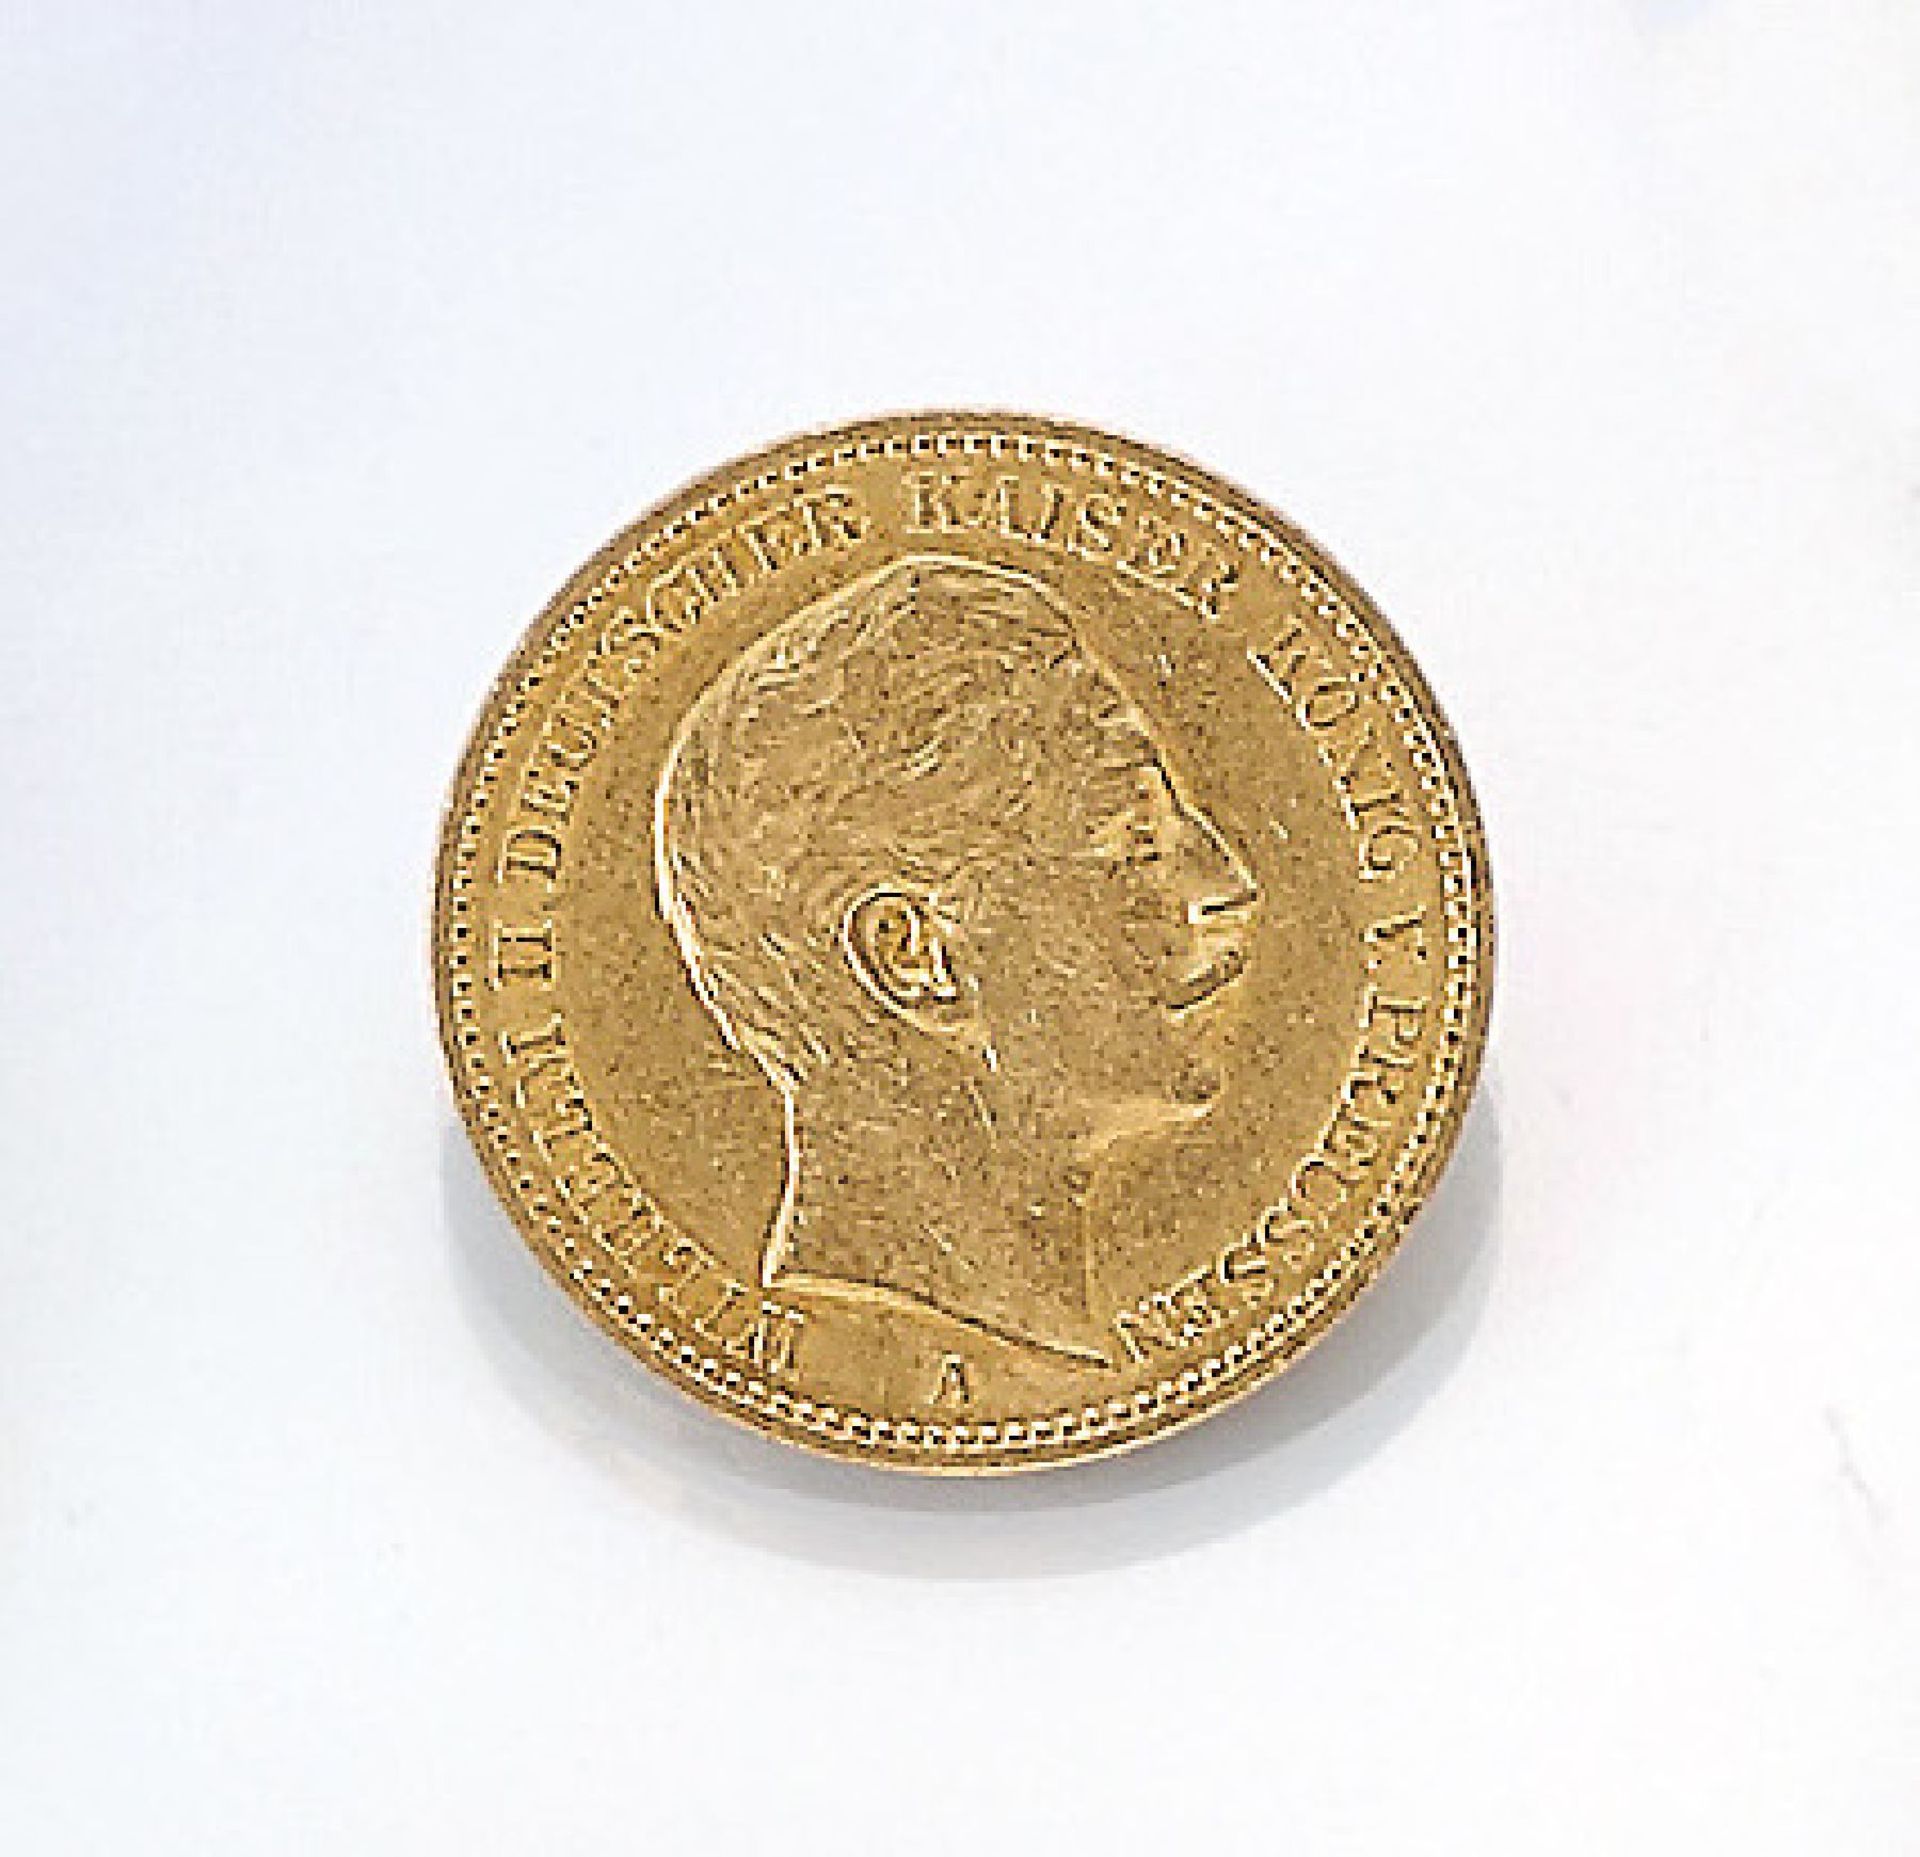 Goldmünze, 20 Mark, Deutsches Reich, 1888, Wilhelm II. deutscher Kaiser König von Preussen,